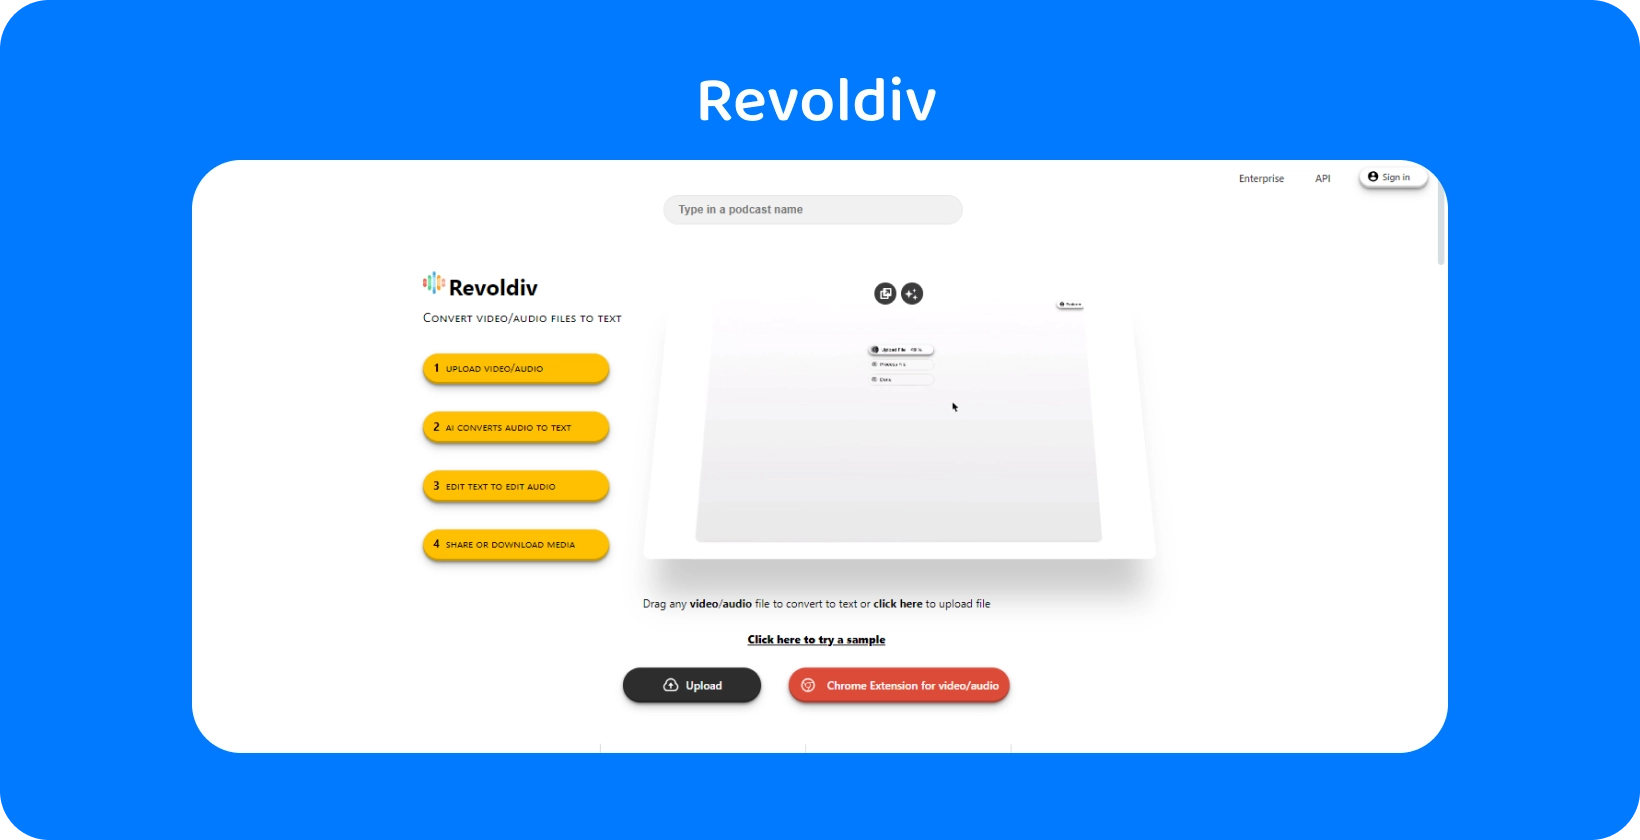 Revoldivs slanke webgrænseflade klar til lyduploads og konvertering til tekst, der viser enkelhed og effektivitet.